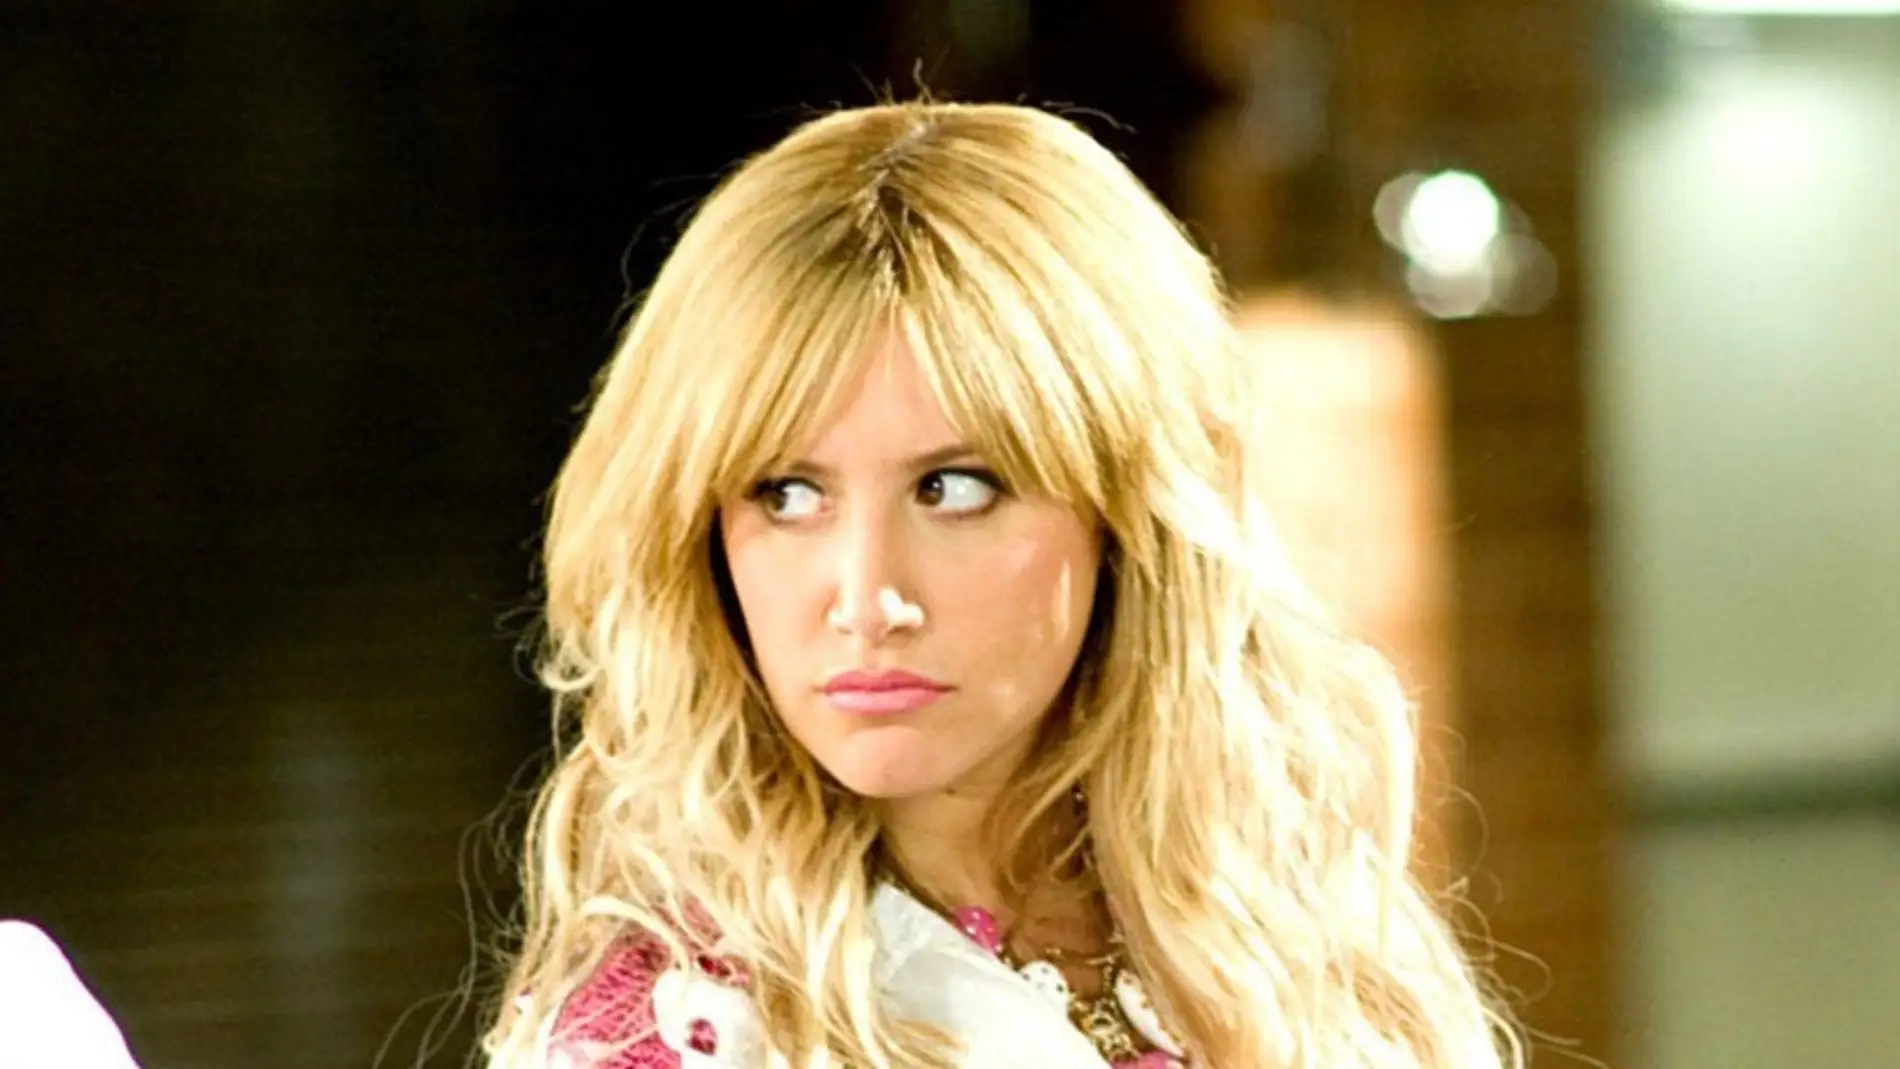 Ashley Tisdale, en 'High School Musical' como Sharpay Evans